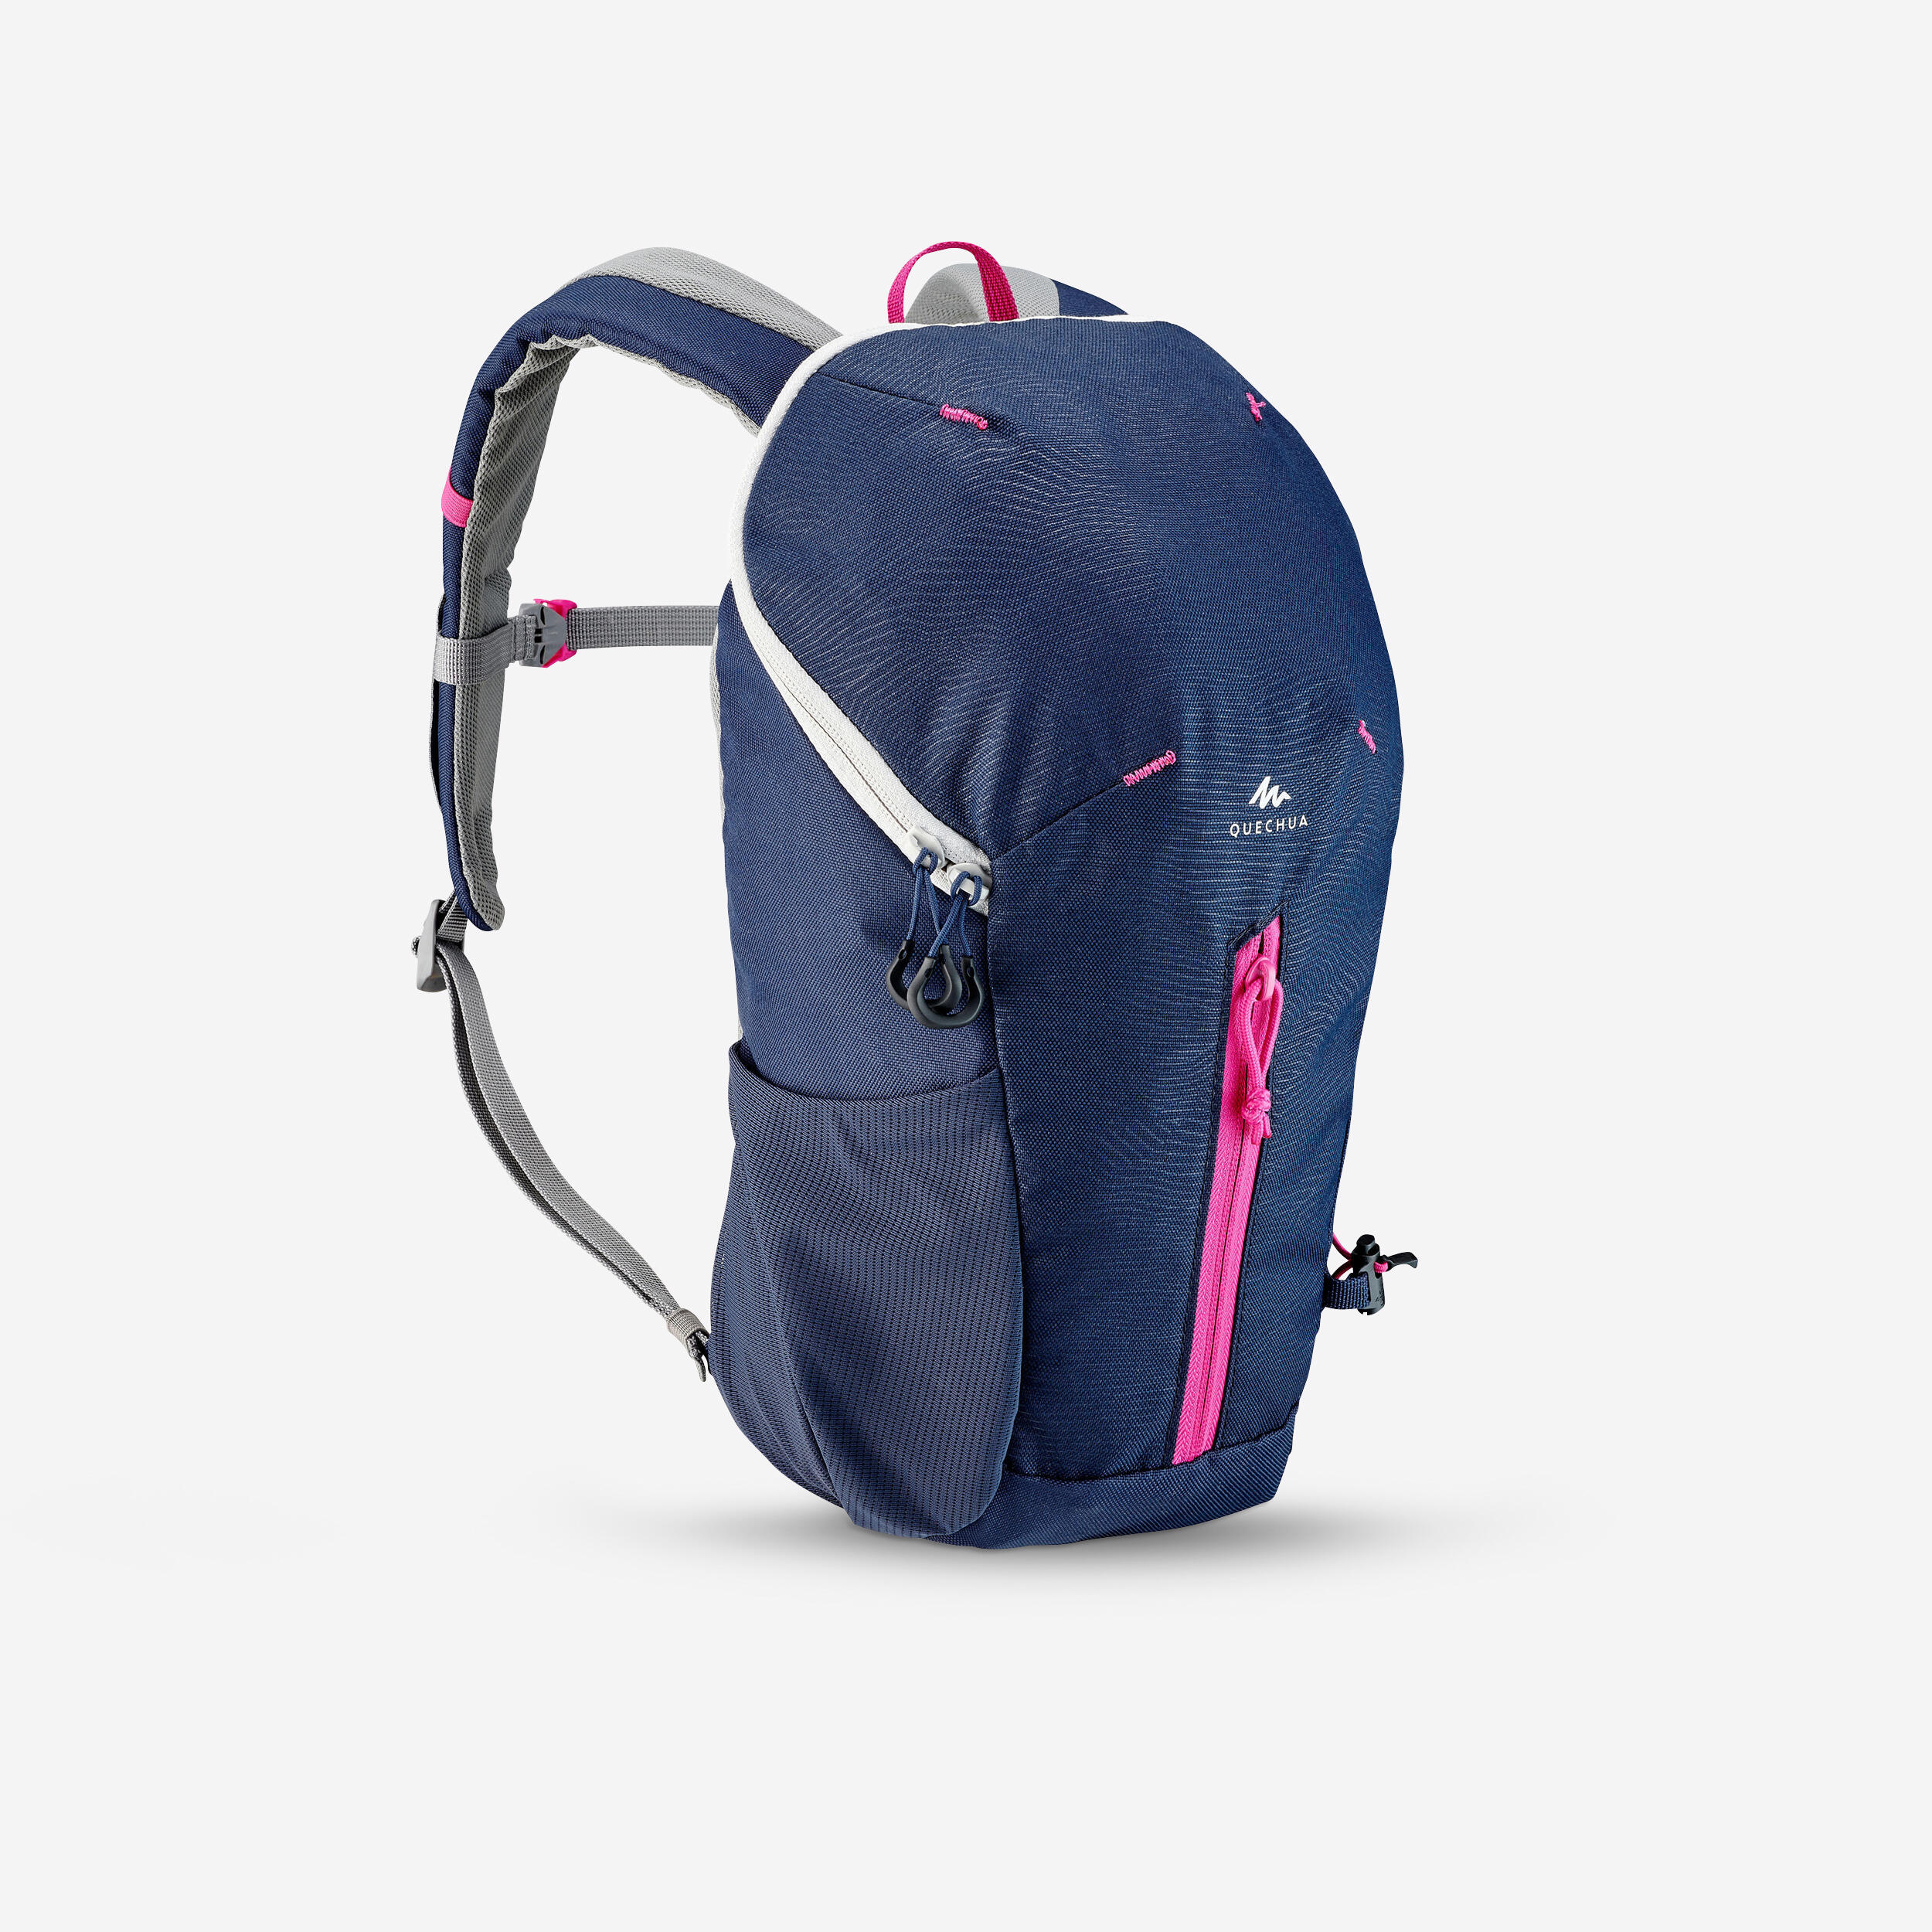 Kids' hiking backpack 10L - MH100 1/9